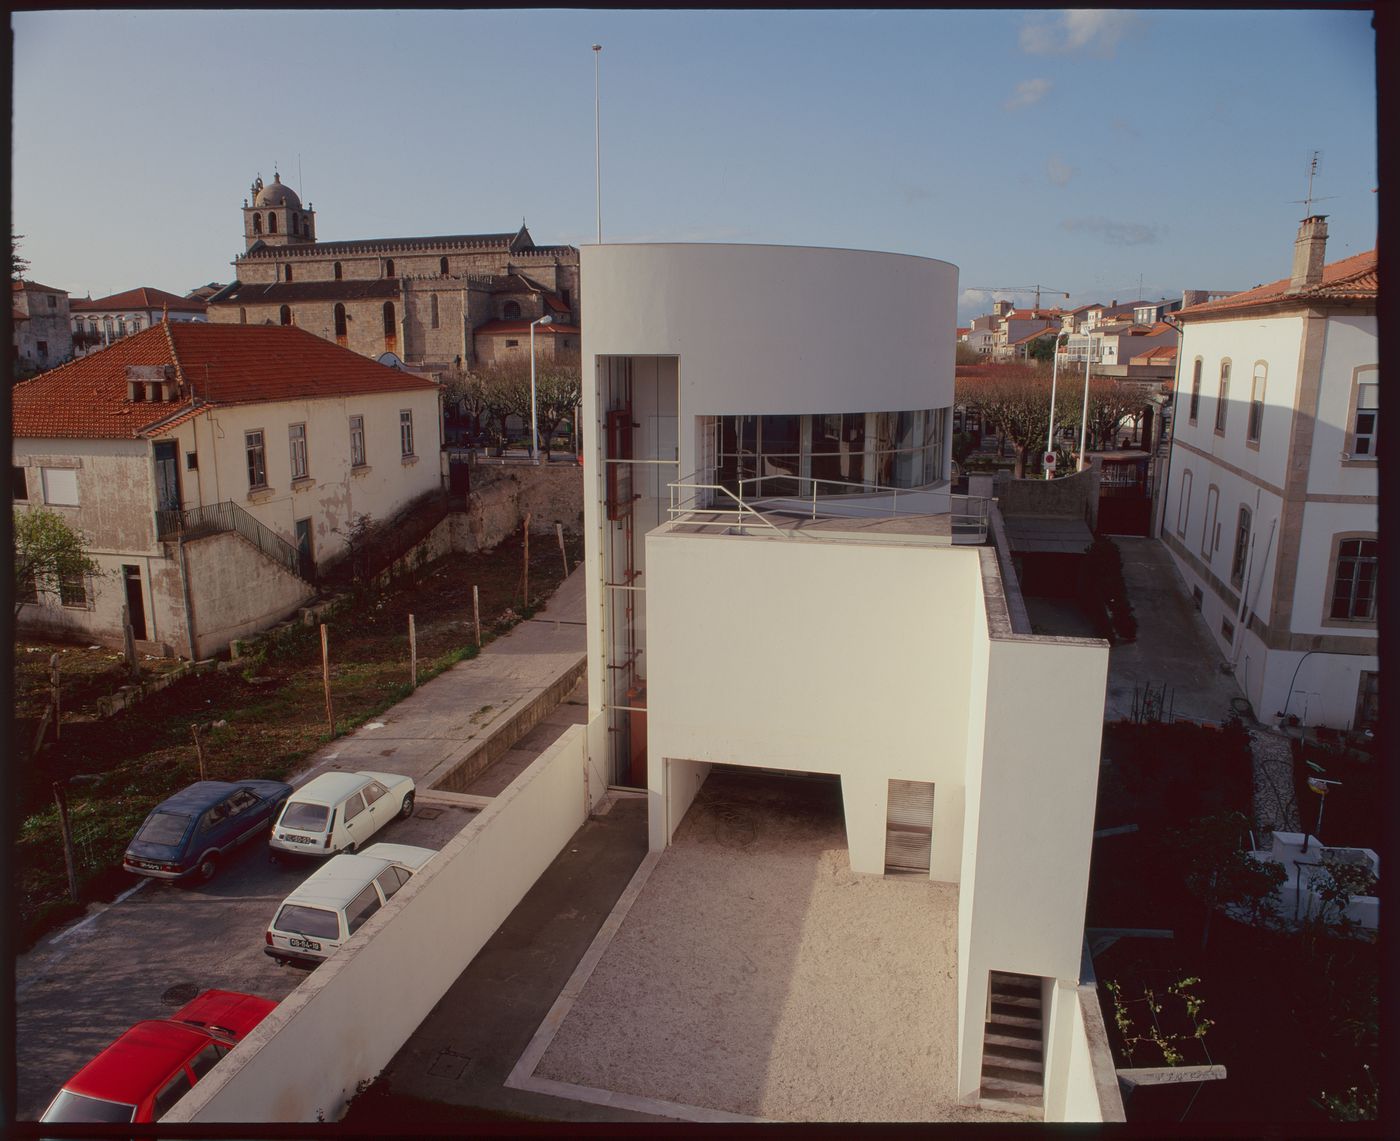 Rear view of Banco Borges & Irmão II [Borges & Irmão bank II], Vila do Conde, Portugal